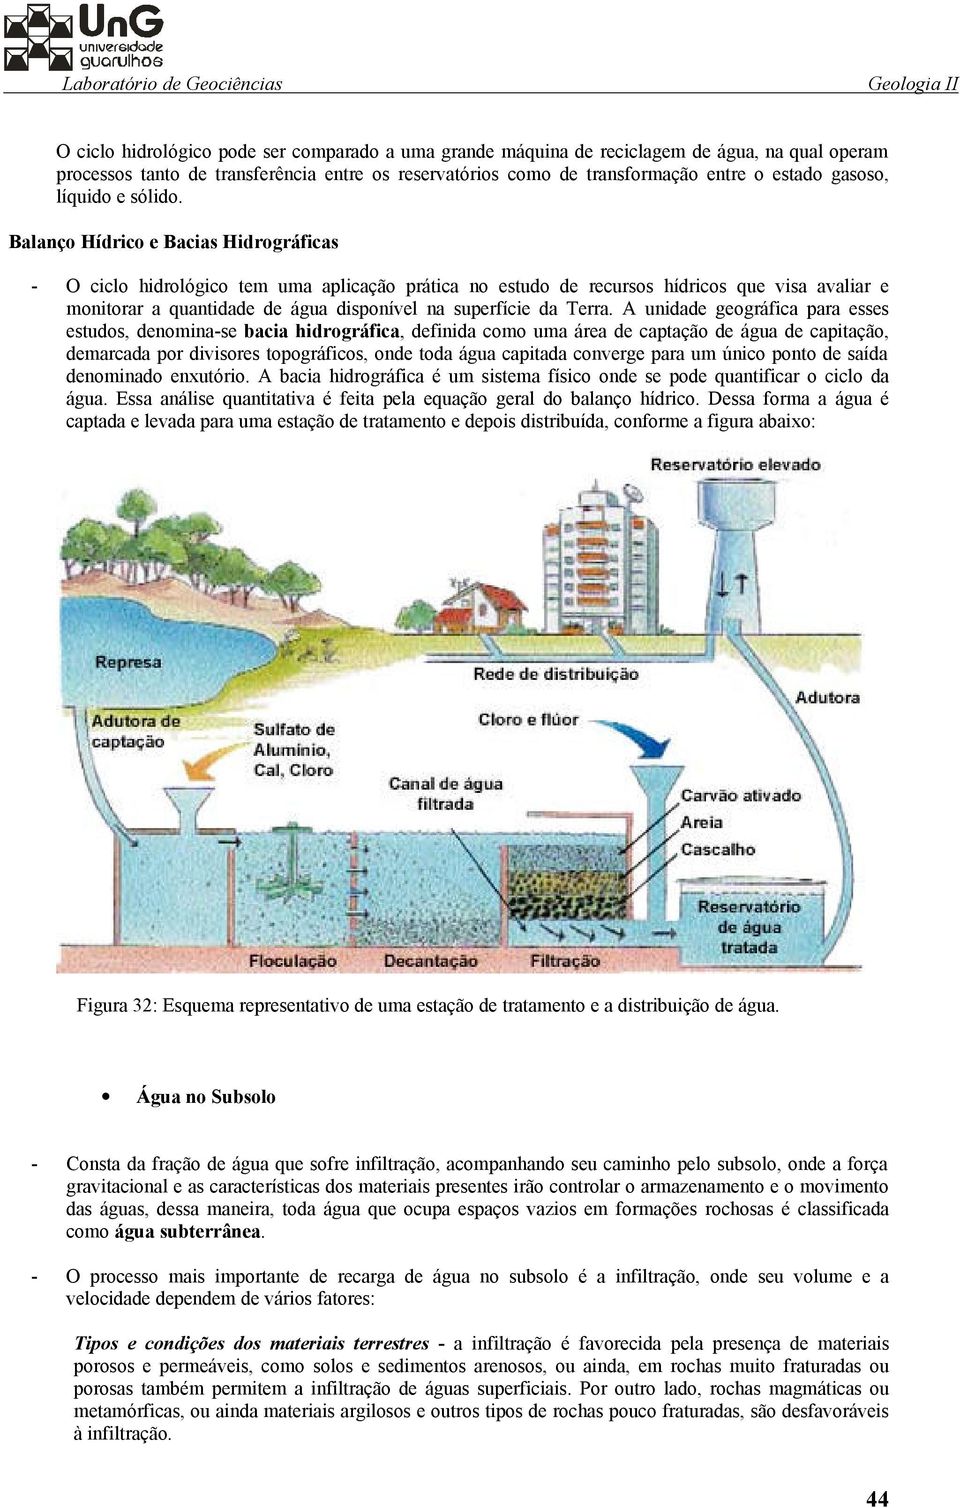 Balanço Hídrico e Bacias Hidrográficas - O ciclo hidrológico tem uma aplicação prática no estudo de recursos hídricos que visa avaliar e monitorar a quantidade de água disponível na superfície da